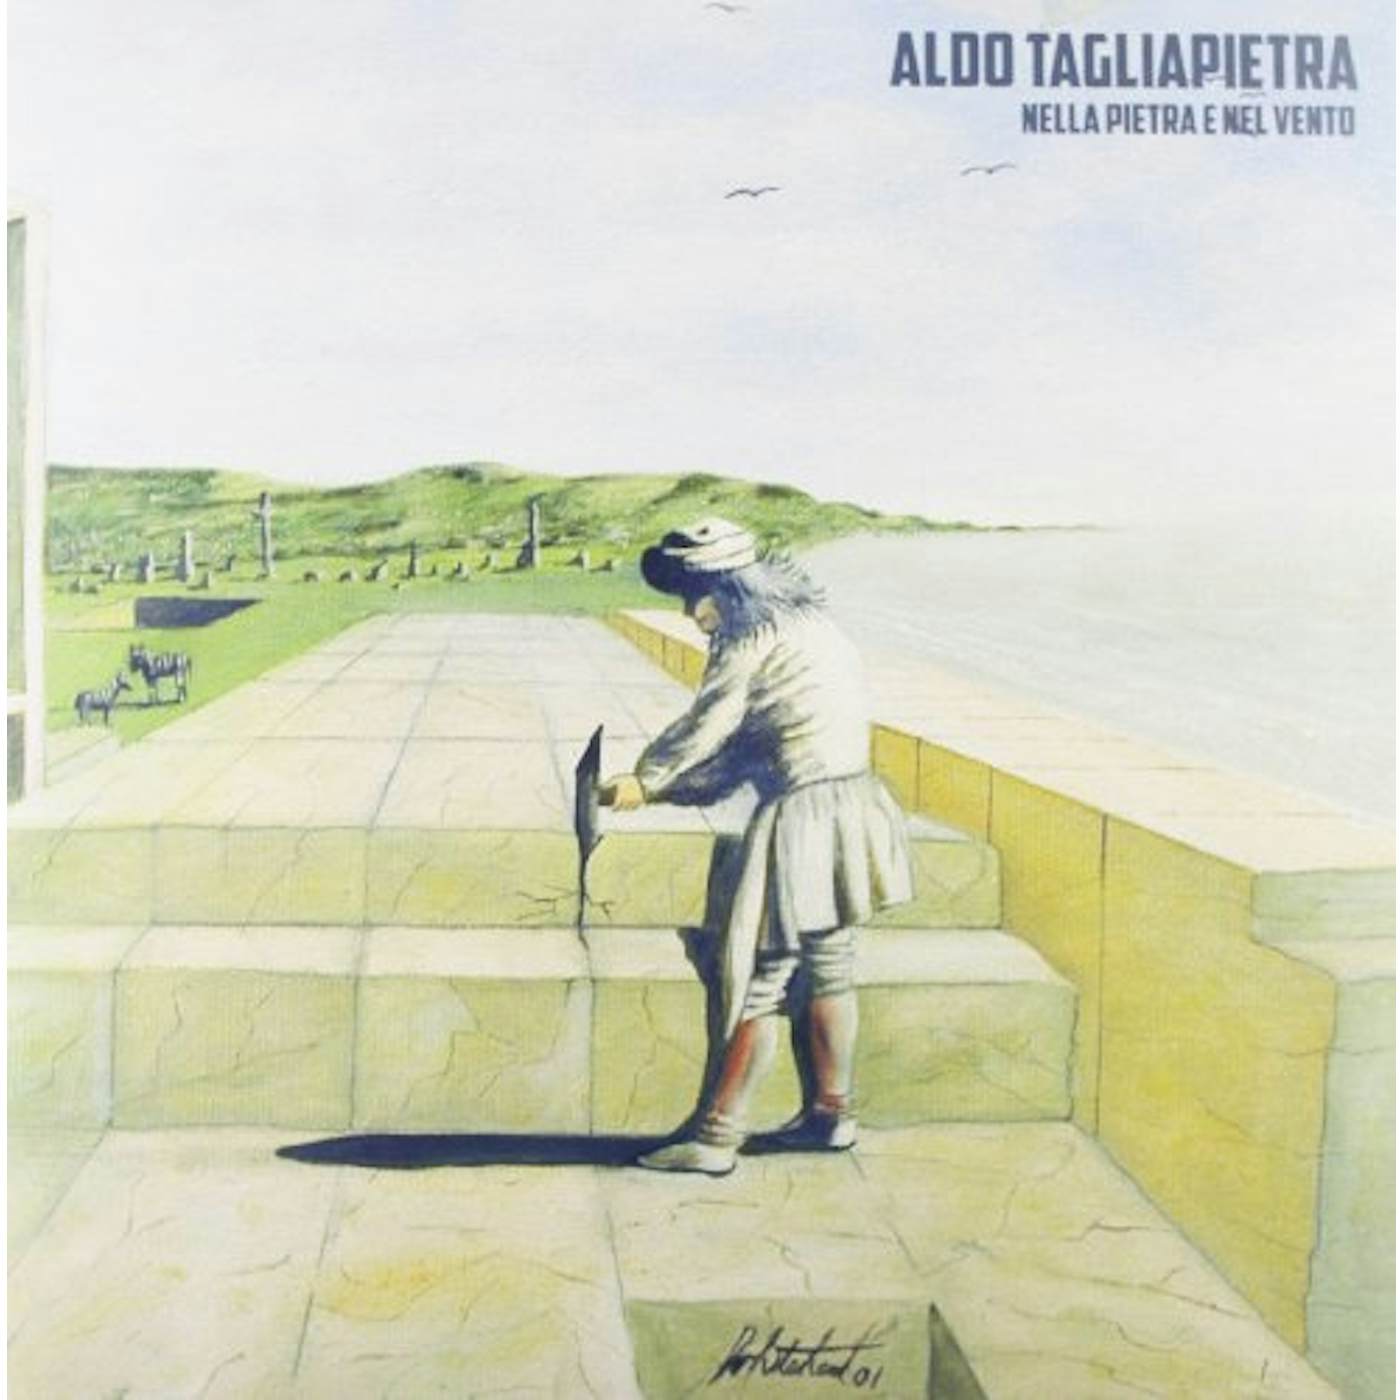 Aldo Tagliapietra Nella Pietra E Nel Vento Vinyl Record